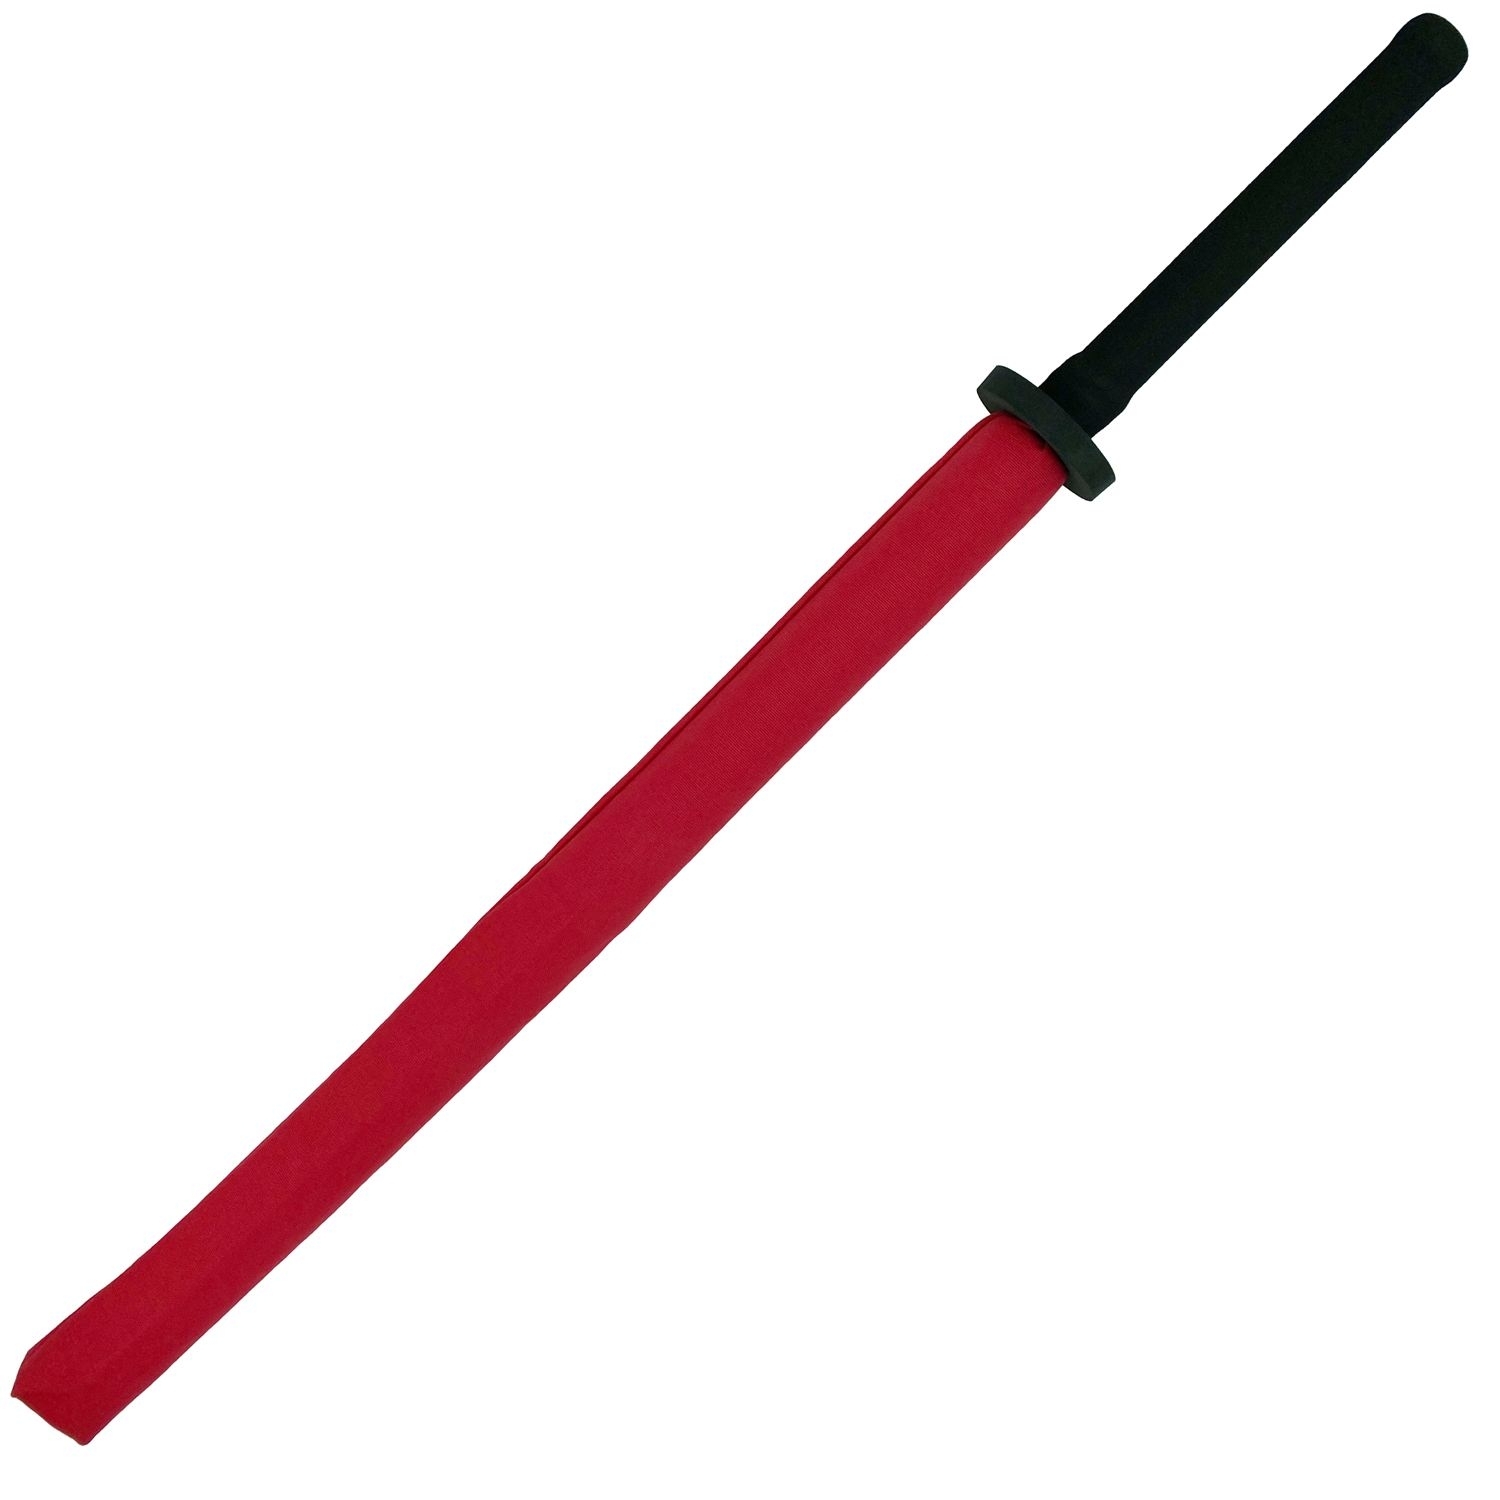 Chanbara Choken Soft Schwert rot-schwarz, ca. 95 cm